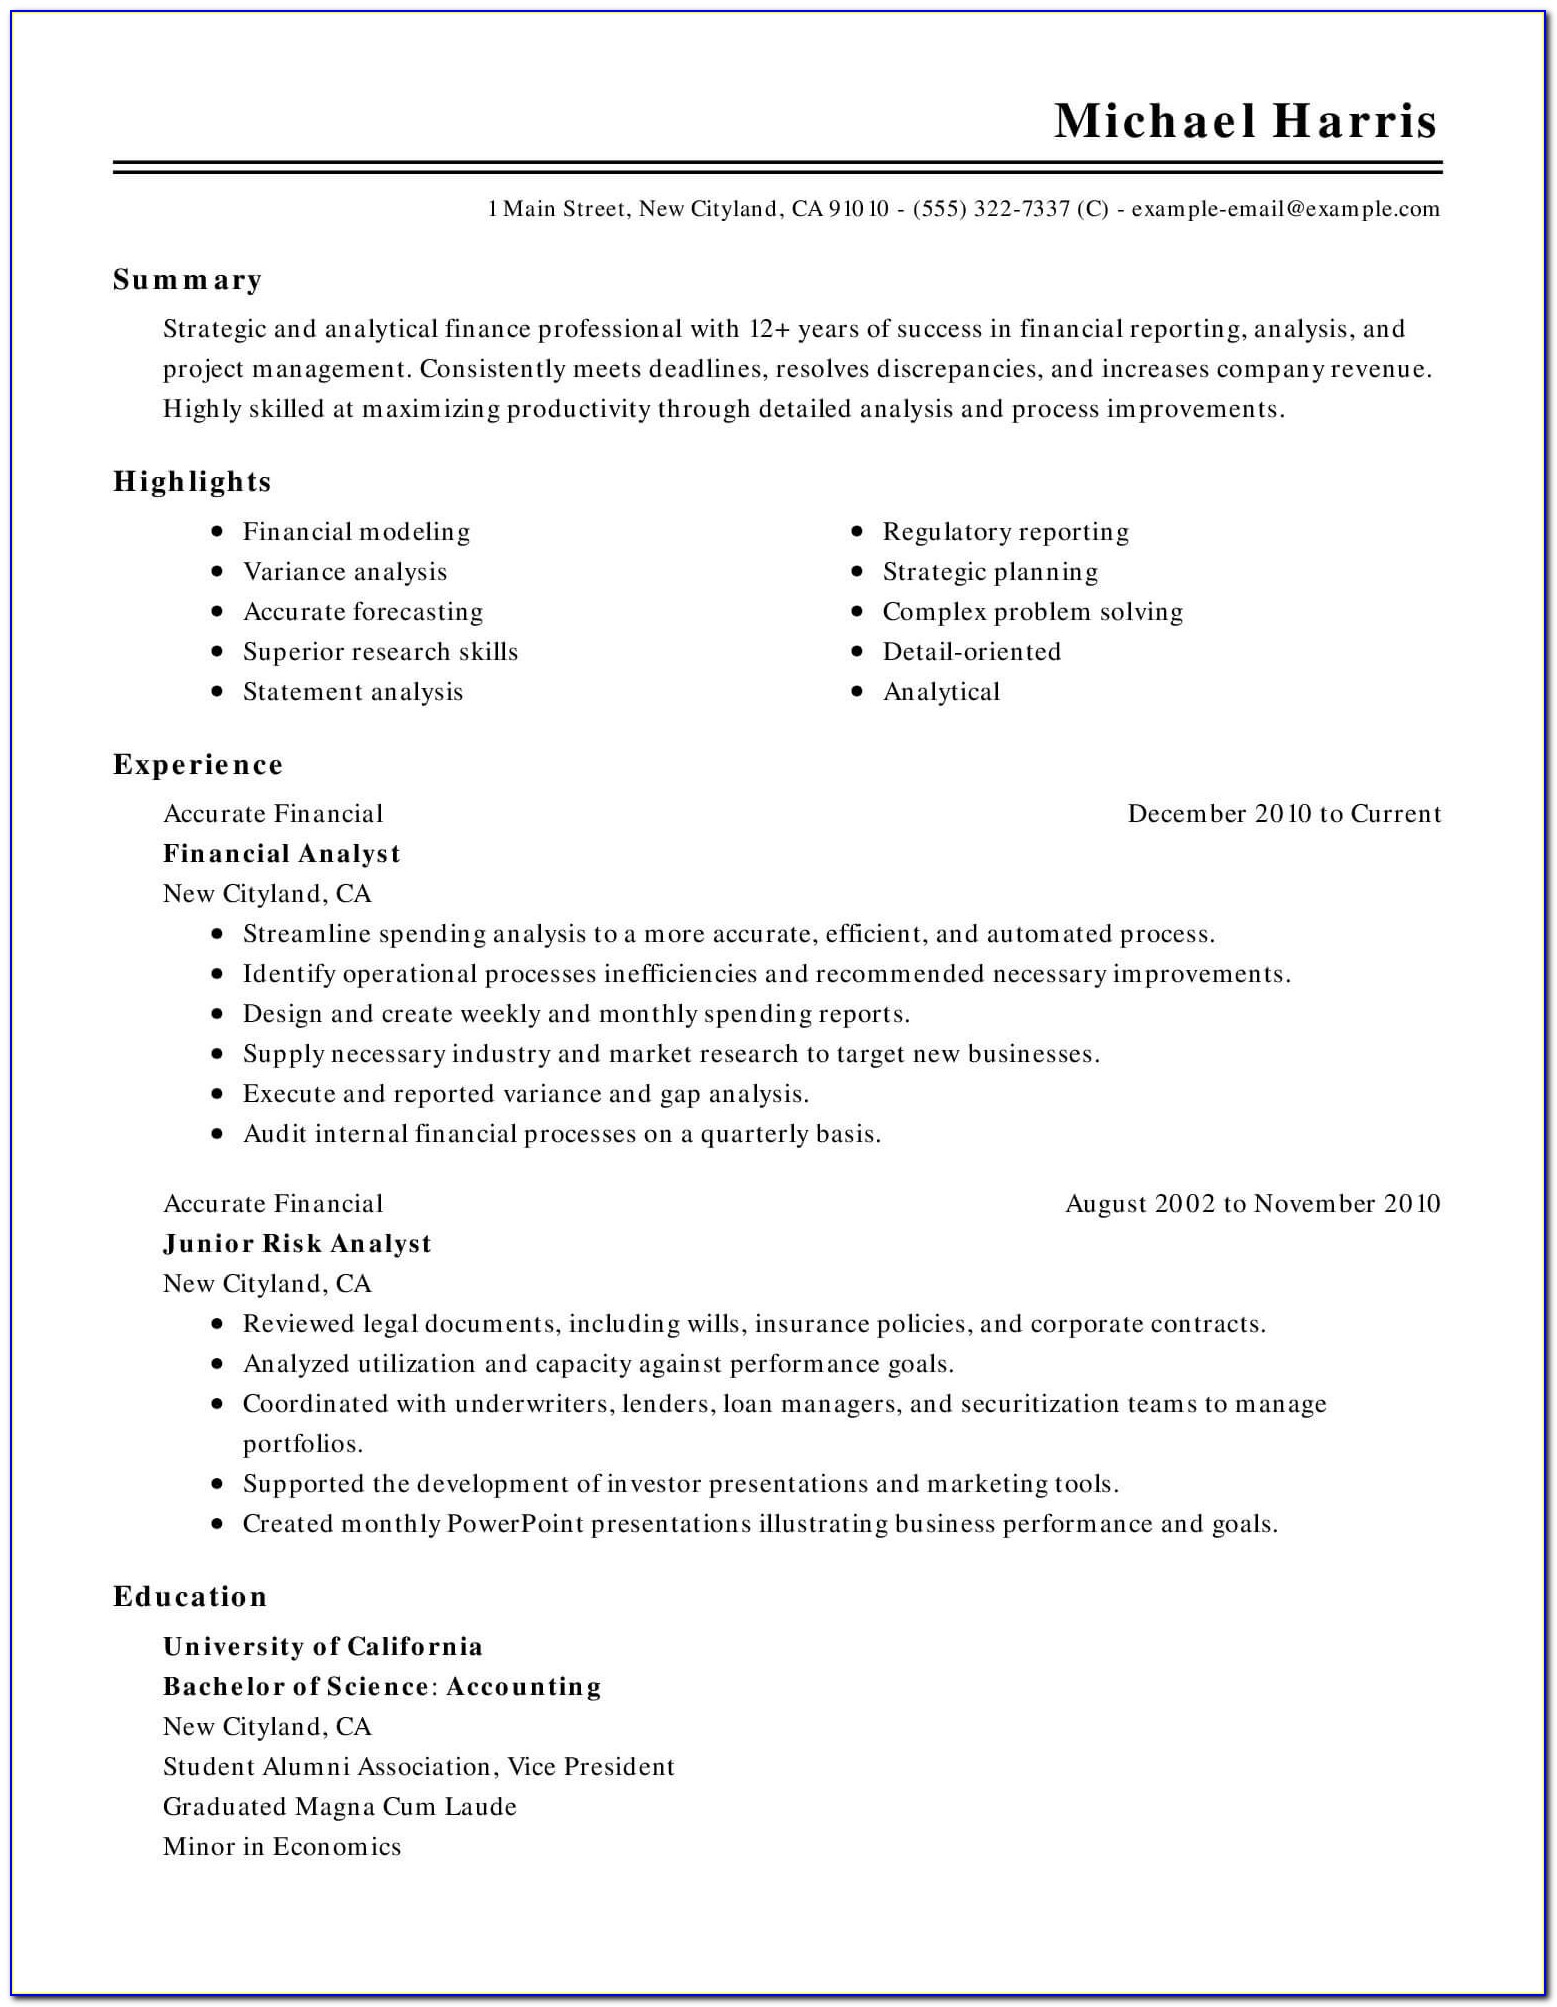 Best Resume Format For Teacher Post